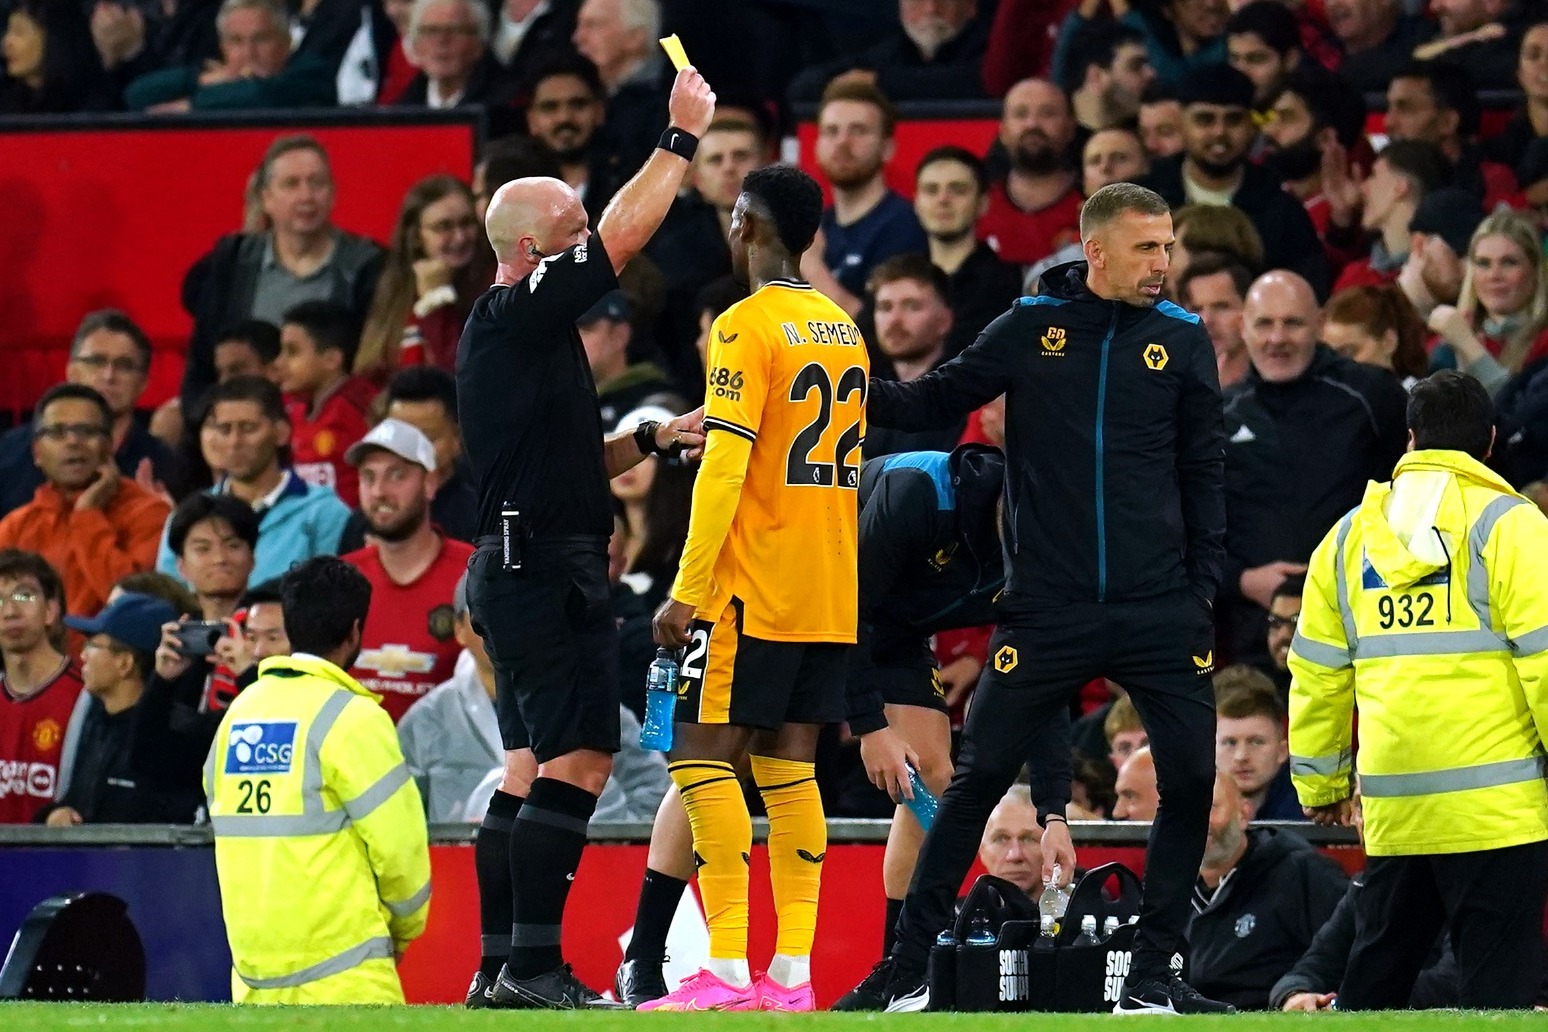 VAR correct not to award Wolves late penalty – Man Utd goalkeeper Andre Onana 